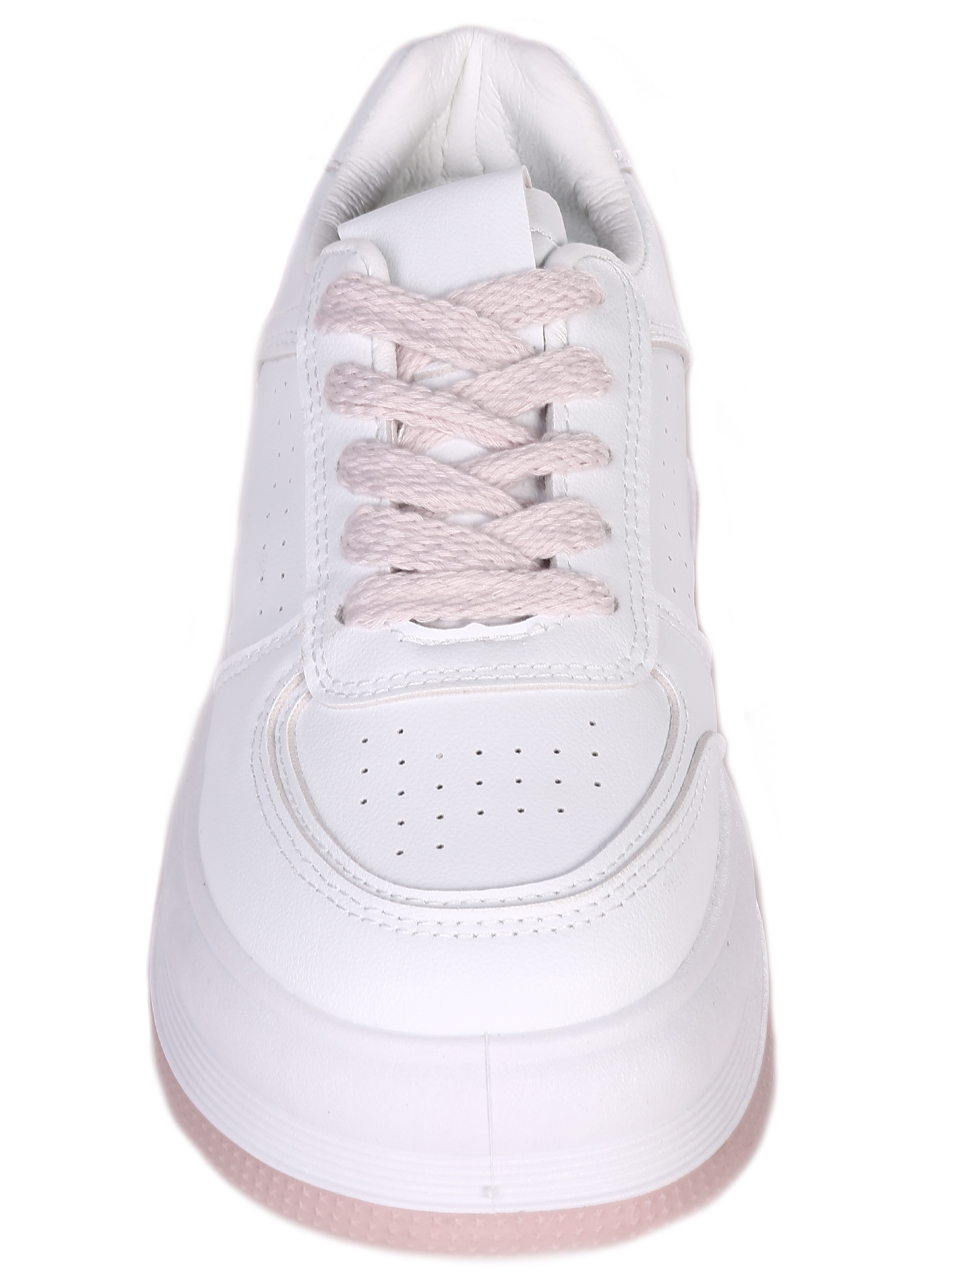 Дамски кецове в бяло 3U-23060 white/pink